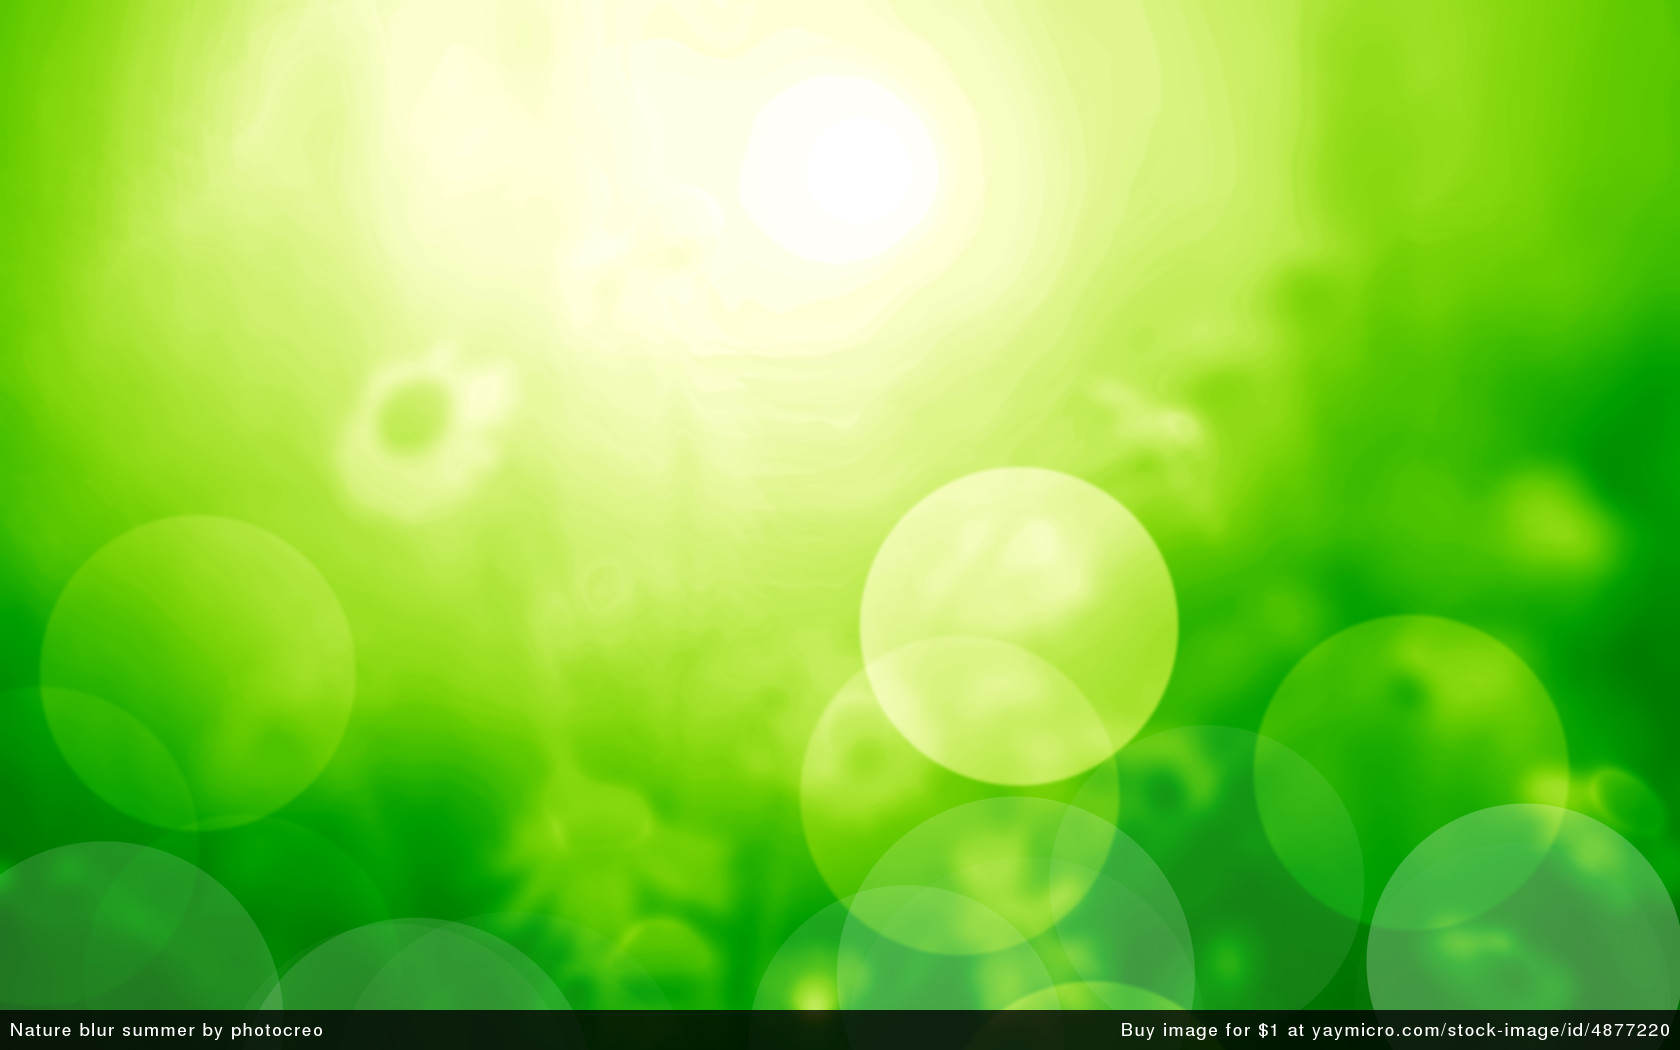 Green Blur Backgrounds - 1680x1050 Wallpaper 